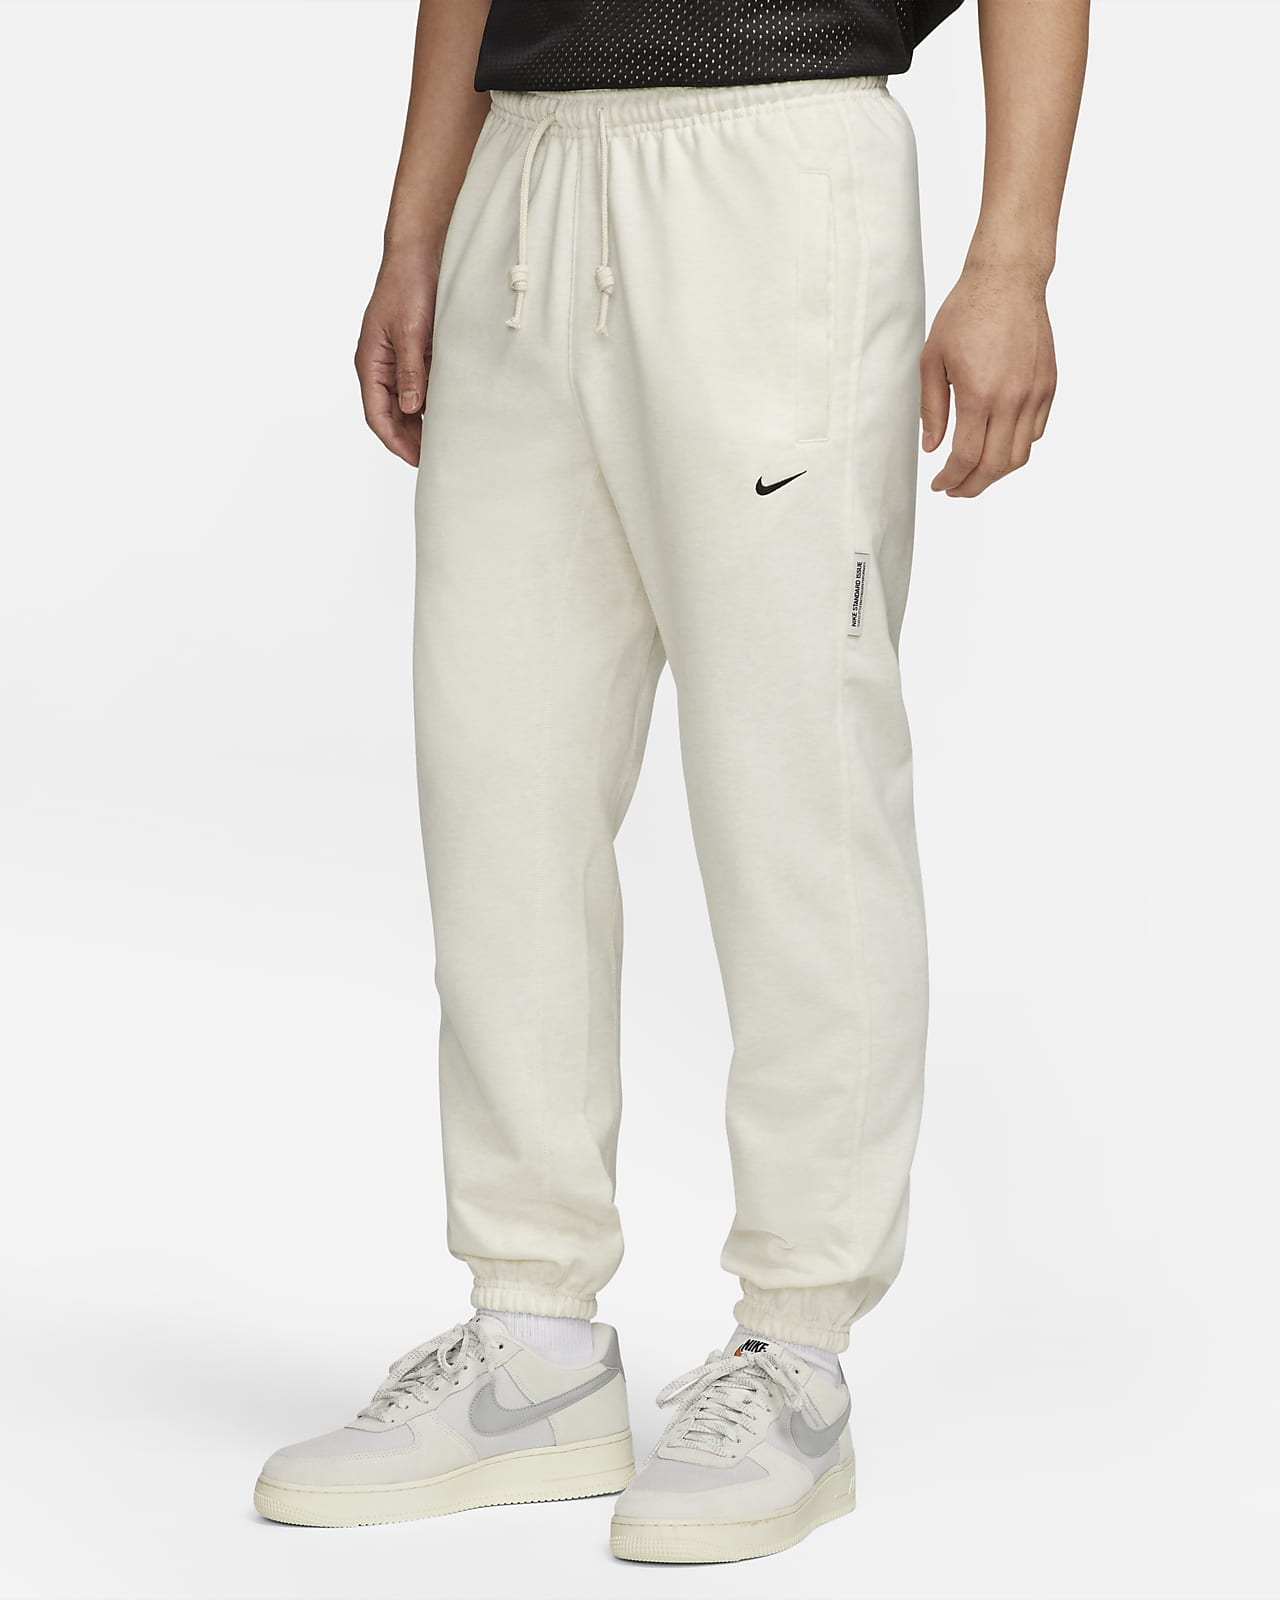 Nike Dri-FIT Standard Issue 男款籃球長褲